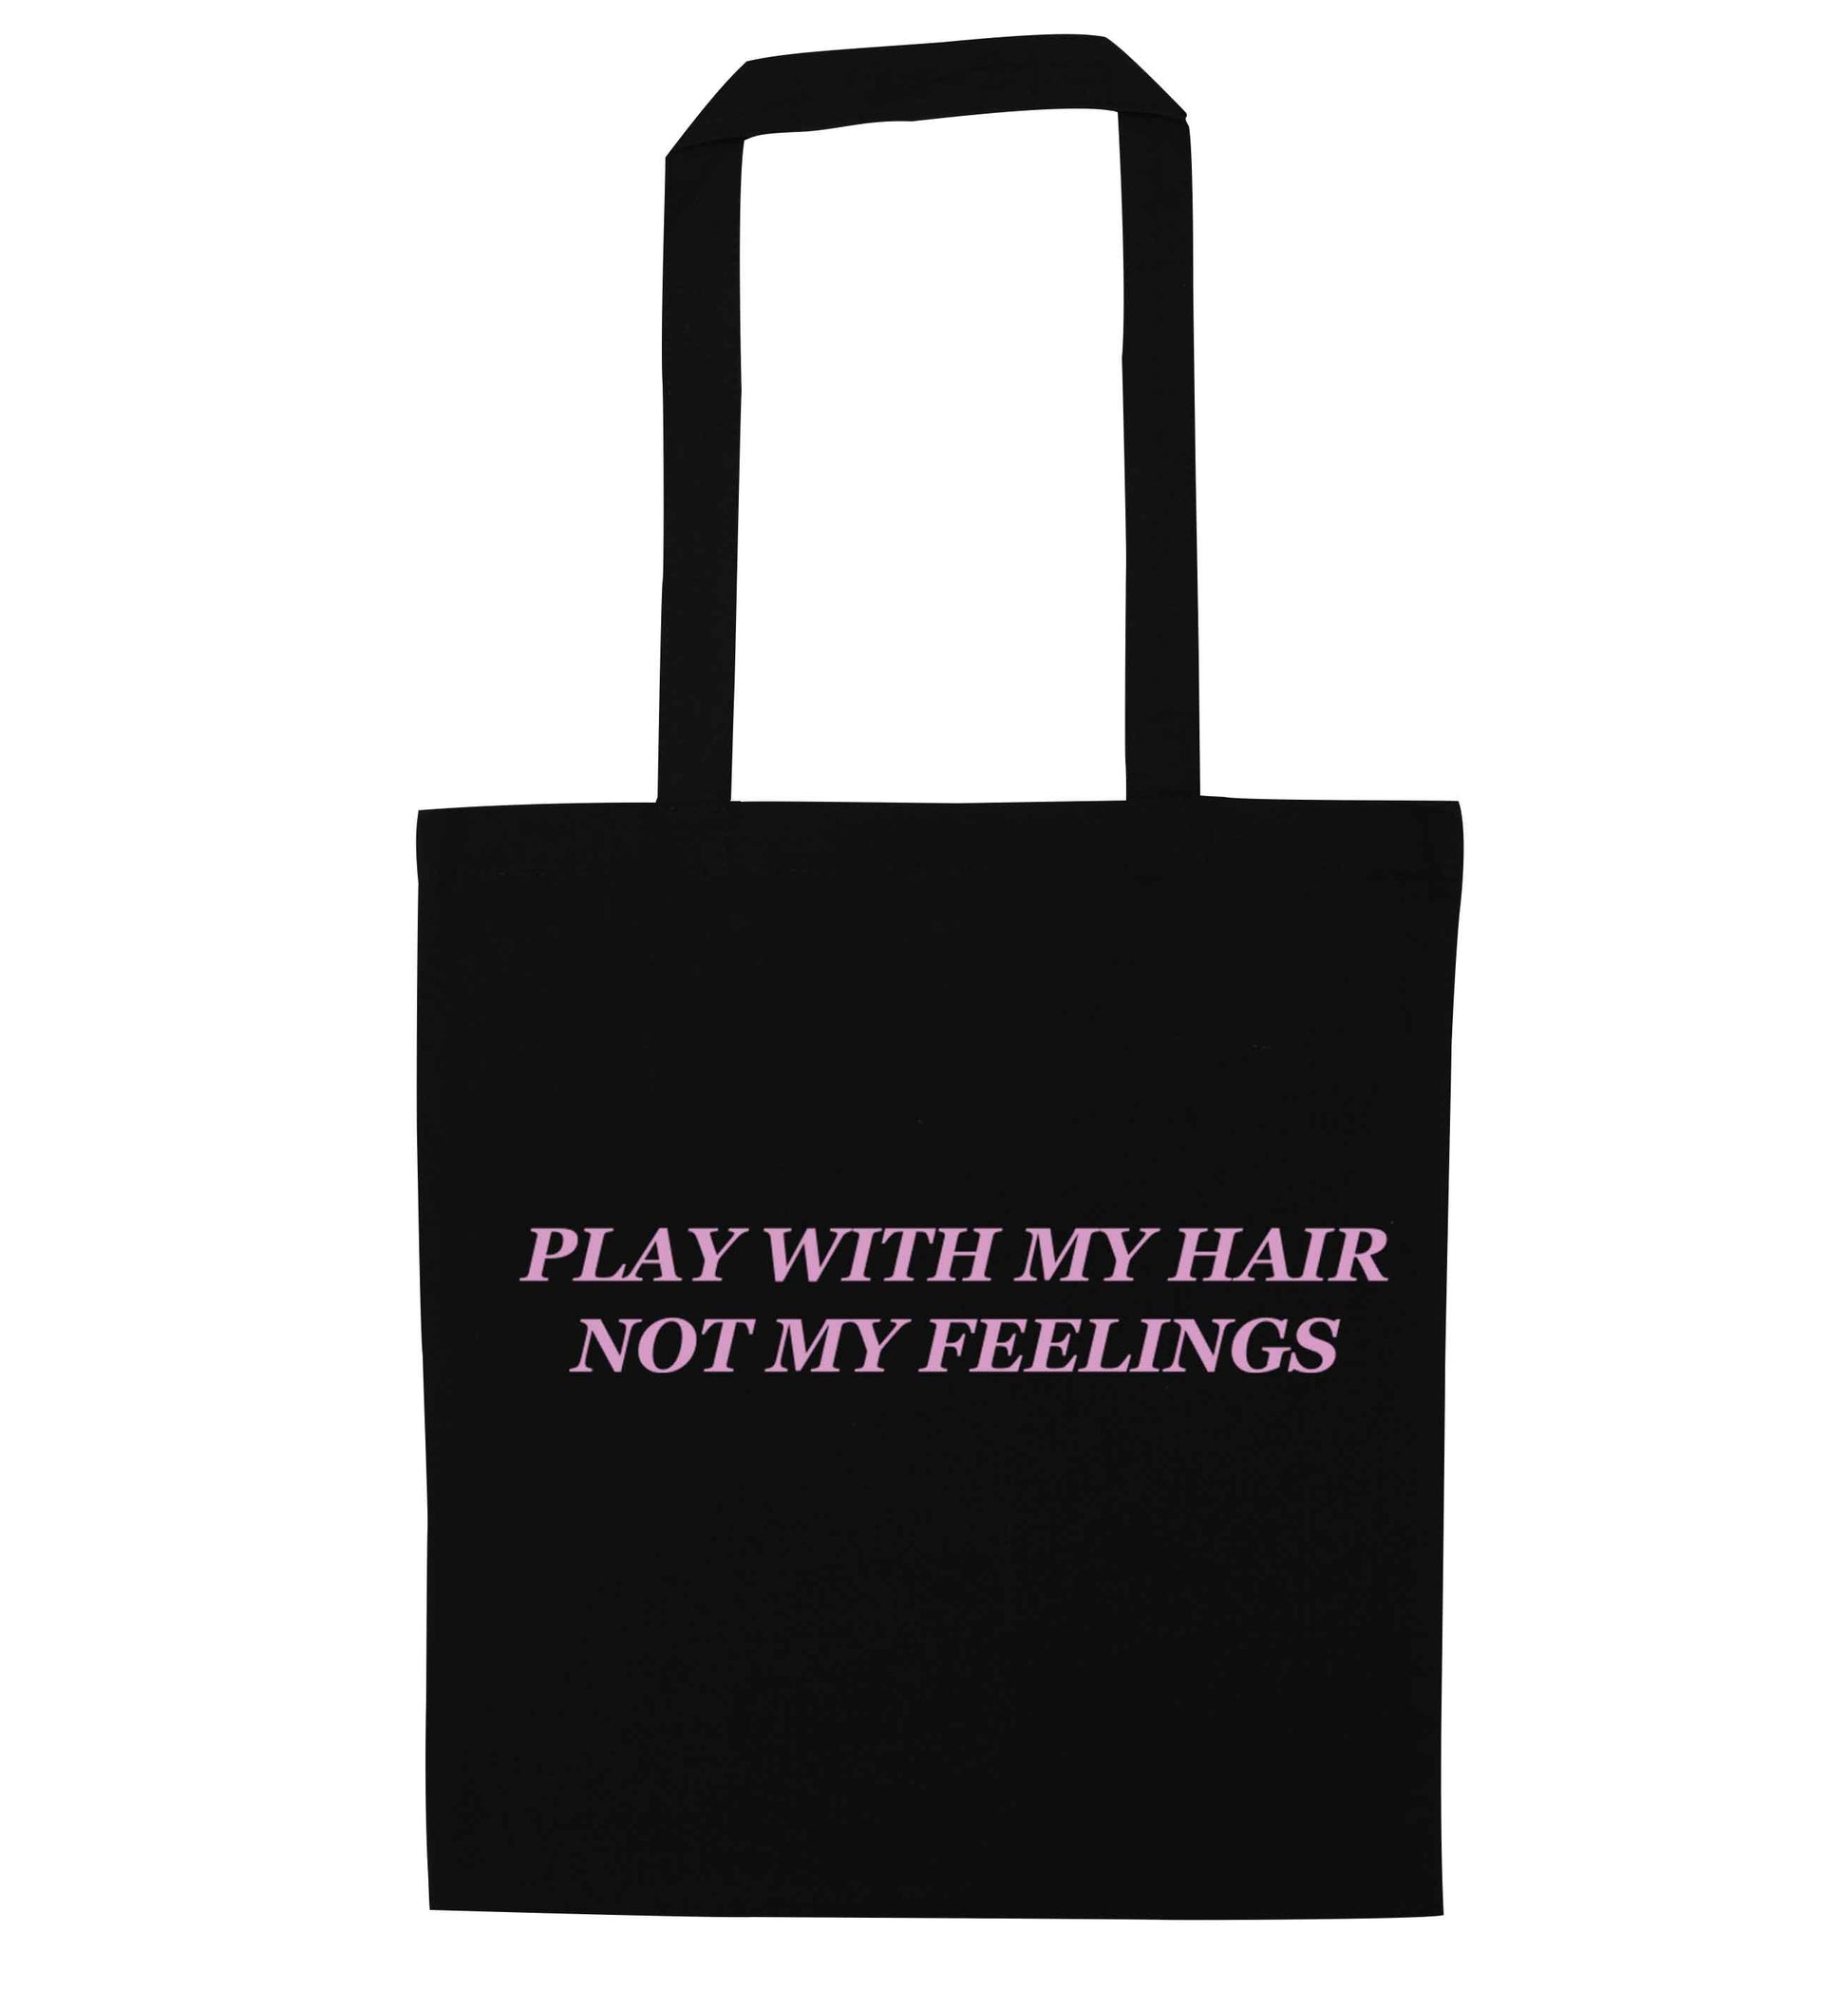 Play with my hair not my feelings black tote bag